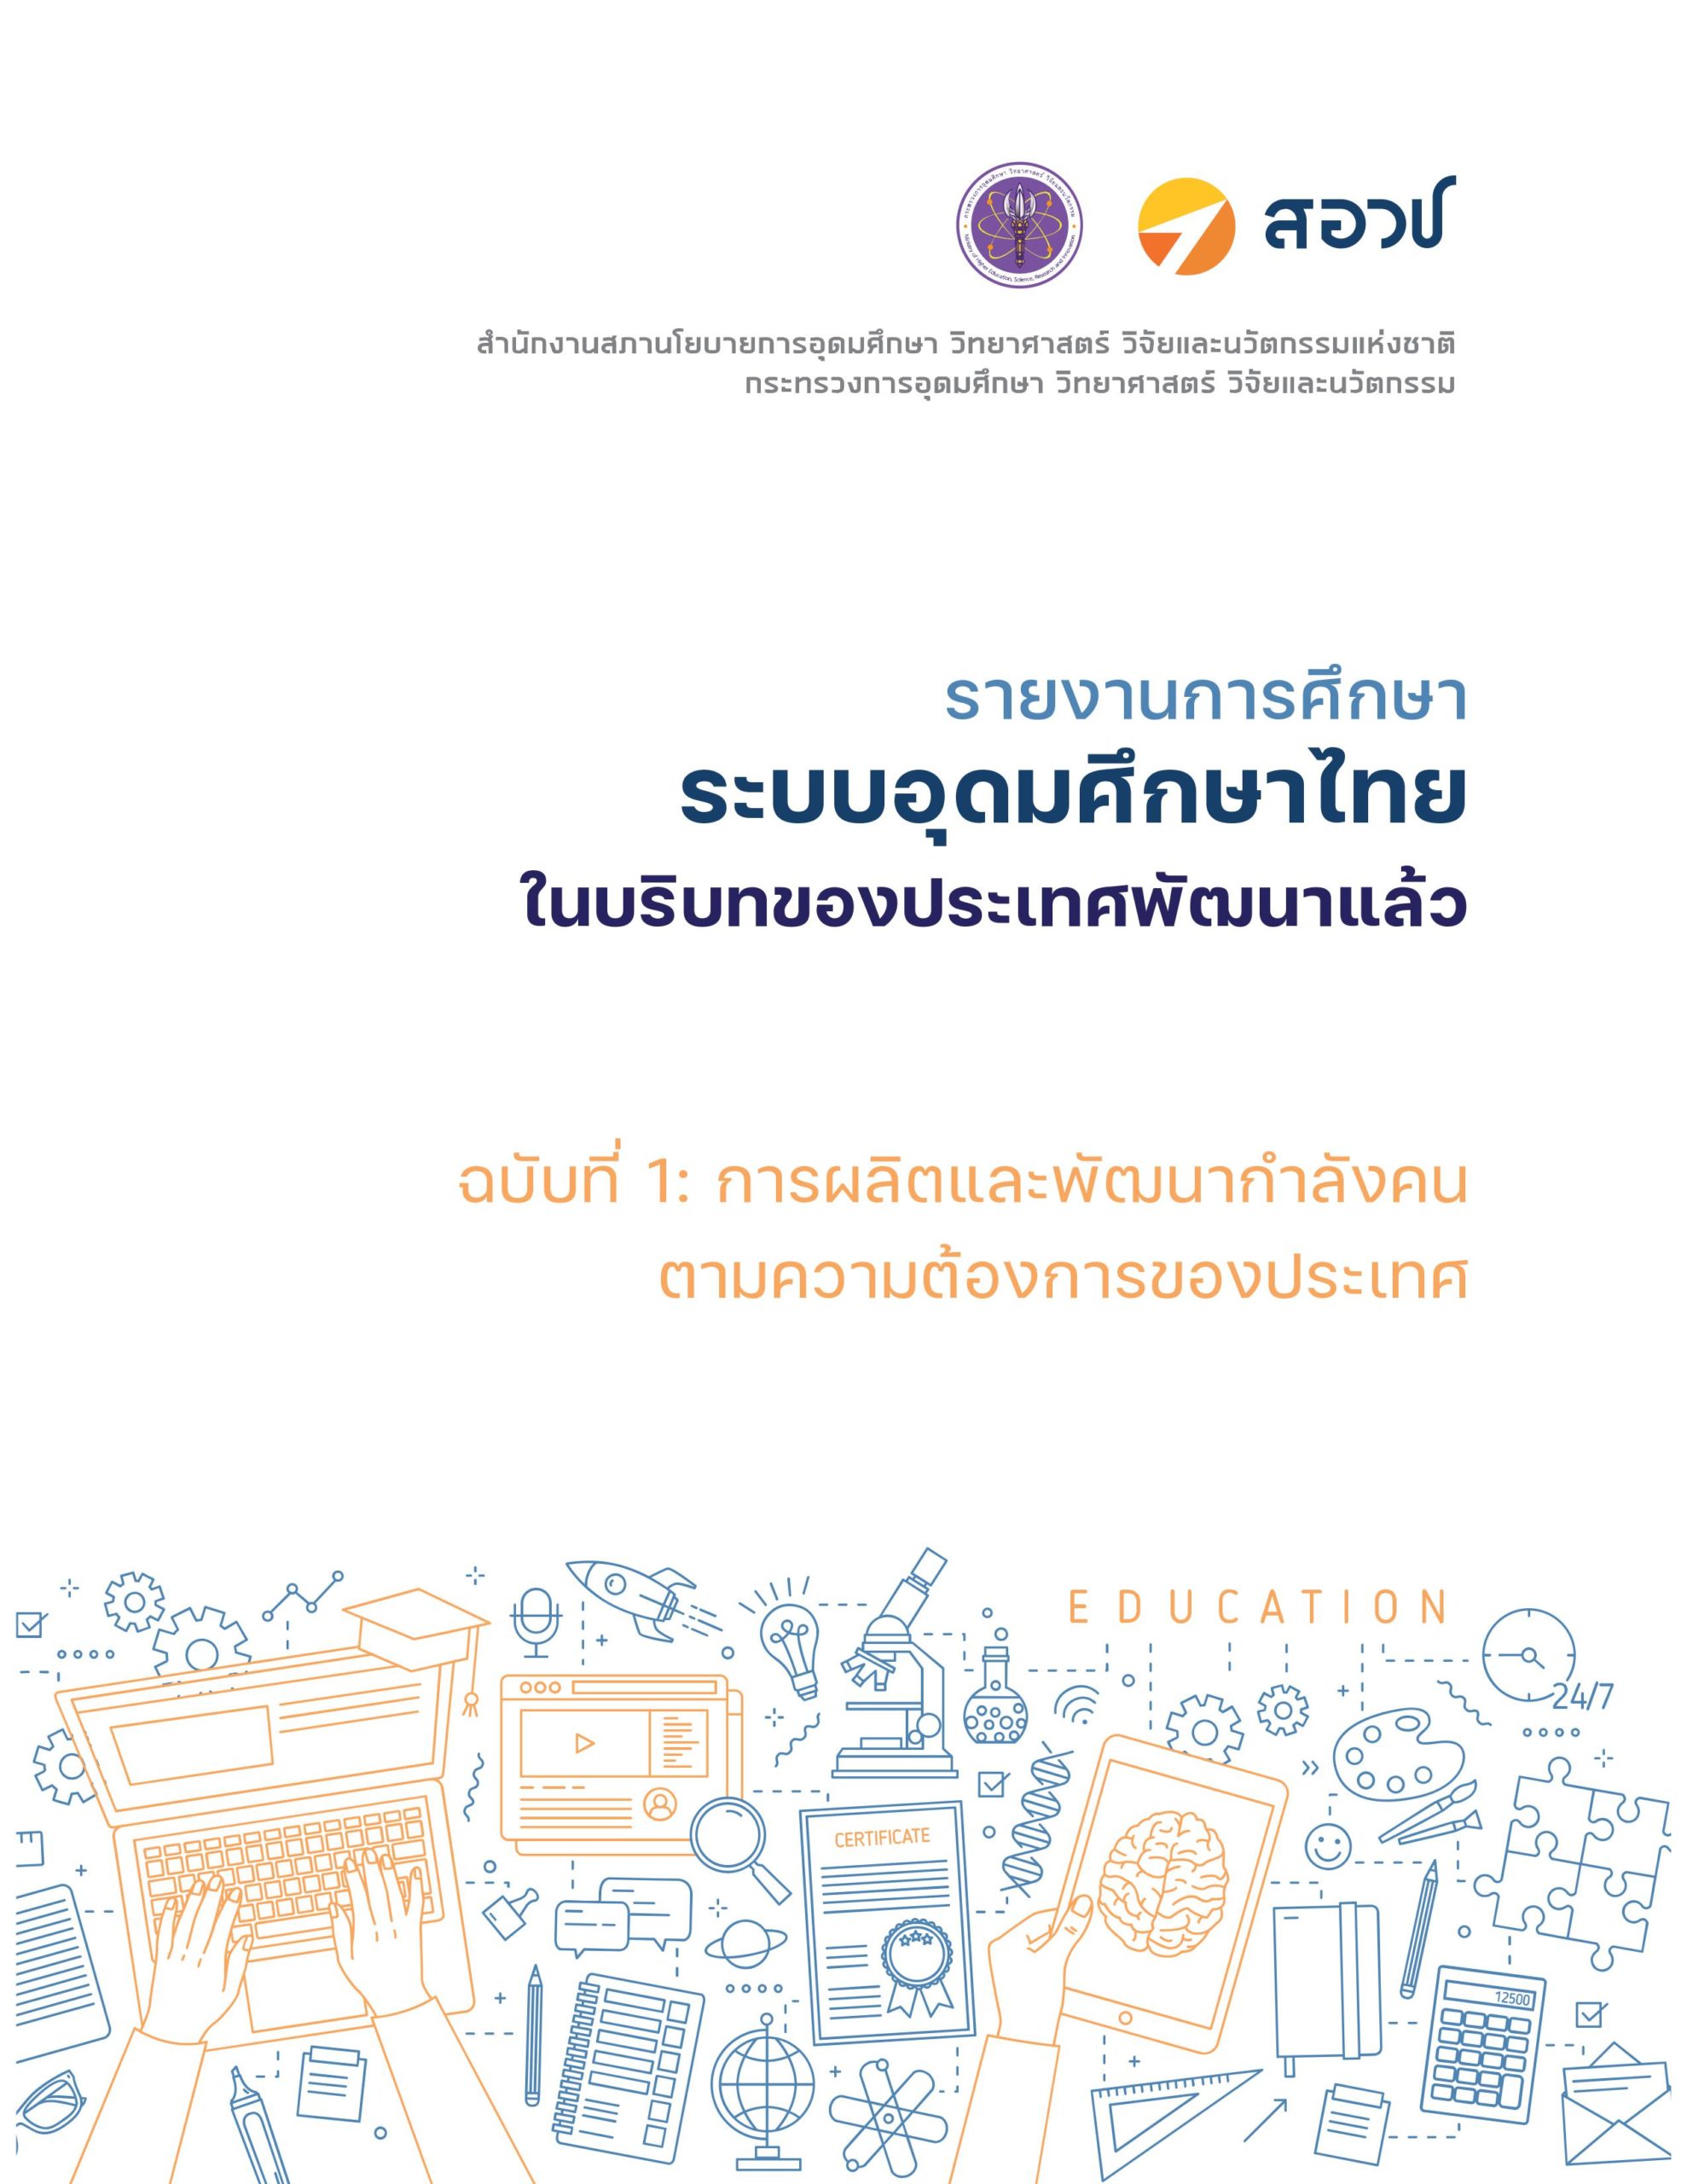 รายงานการศึกษา ระบบอุดมศึกษาไทยในบริบทของประเทศพัฒนาแล้ว ฉบับที่ 1: การผลิตและพัฒนากำลังคนตามความต้องการของประเทศ